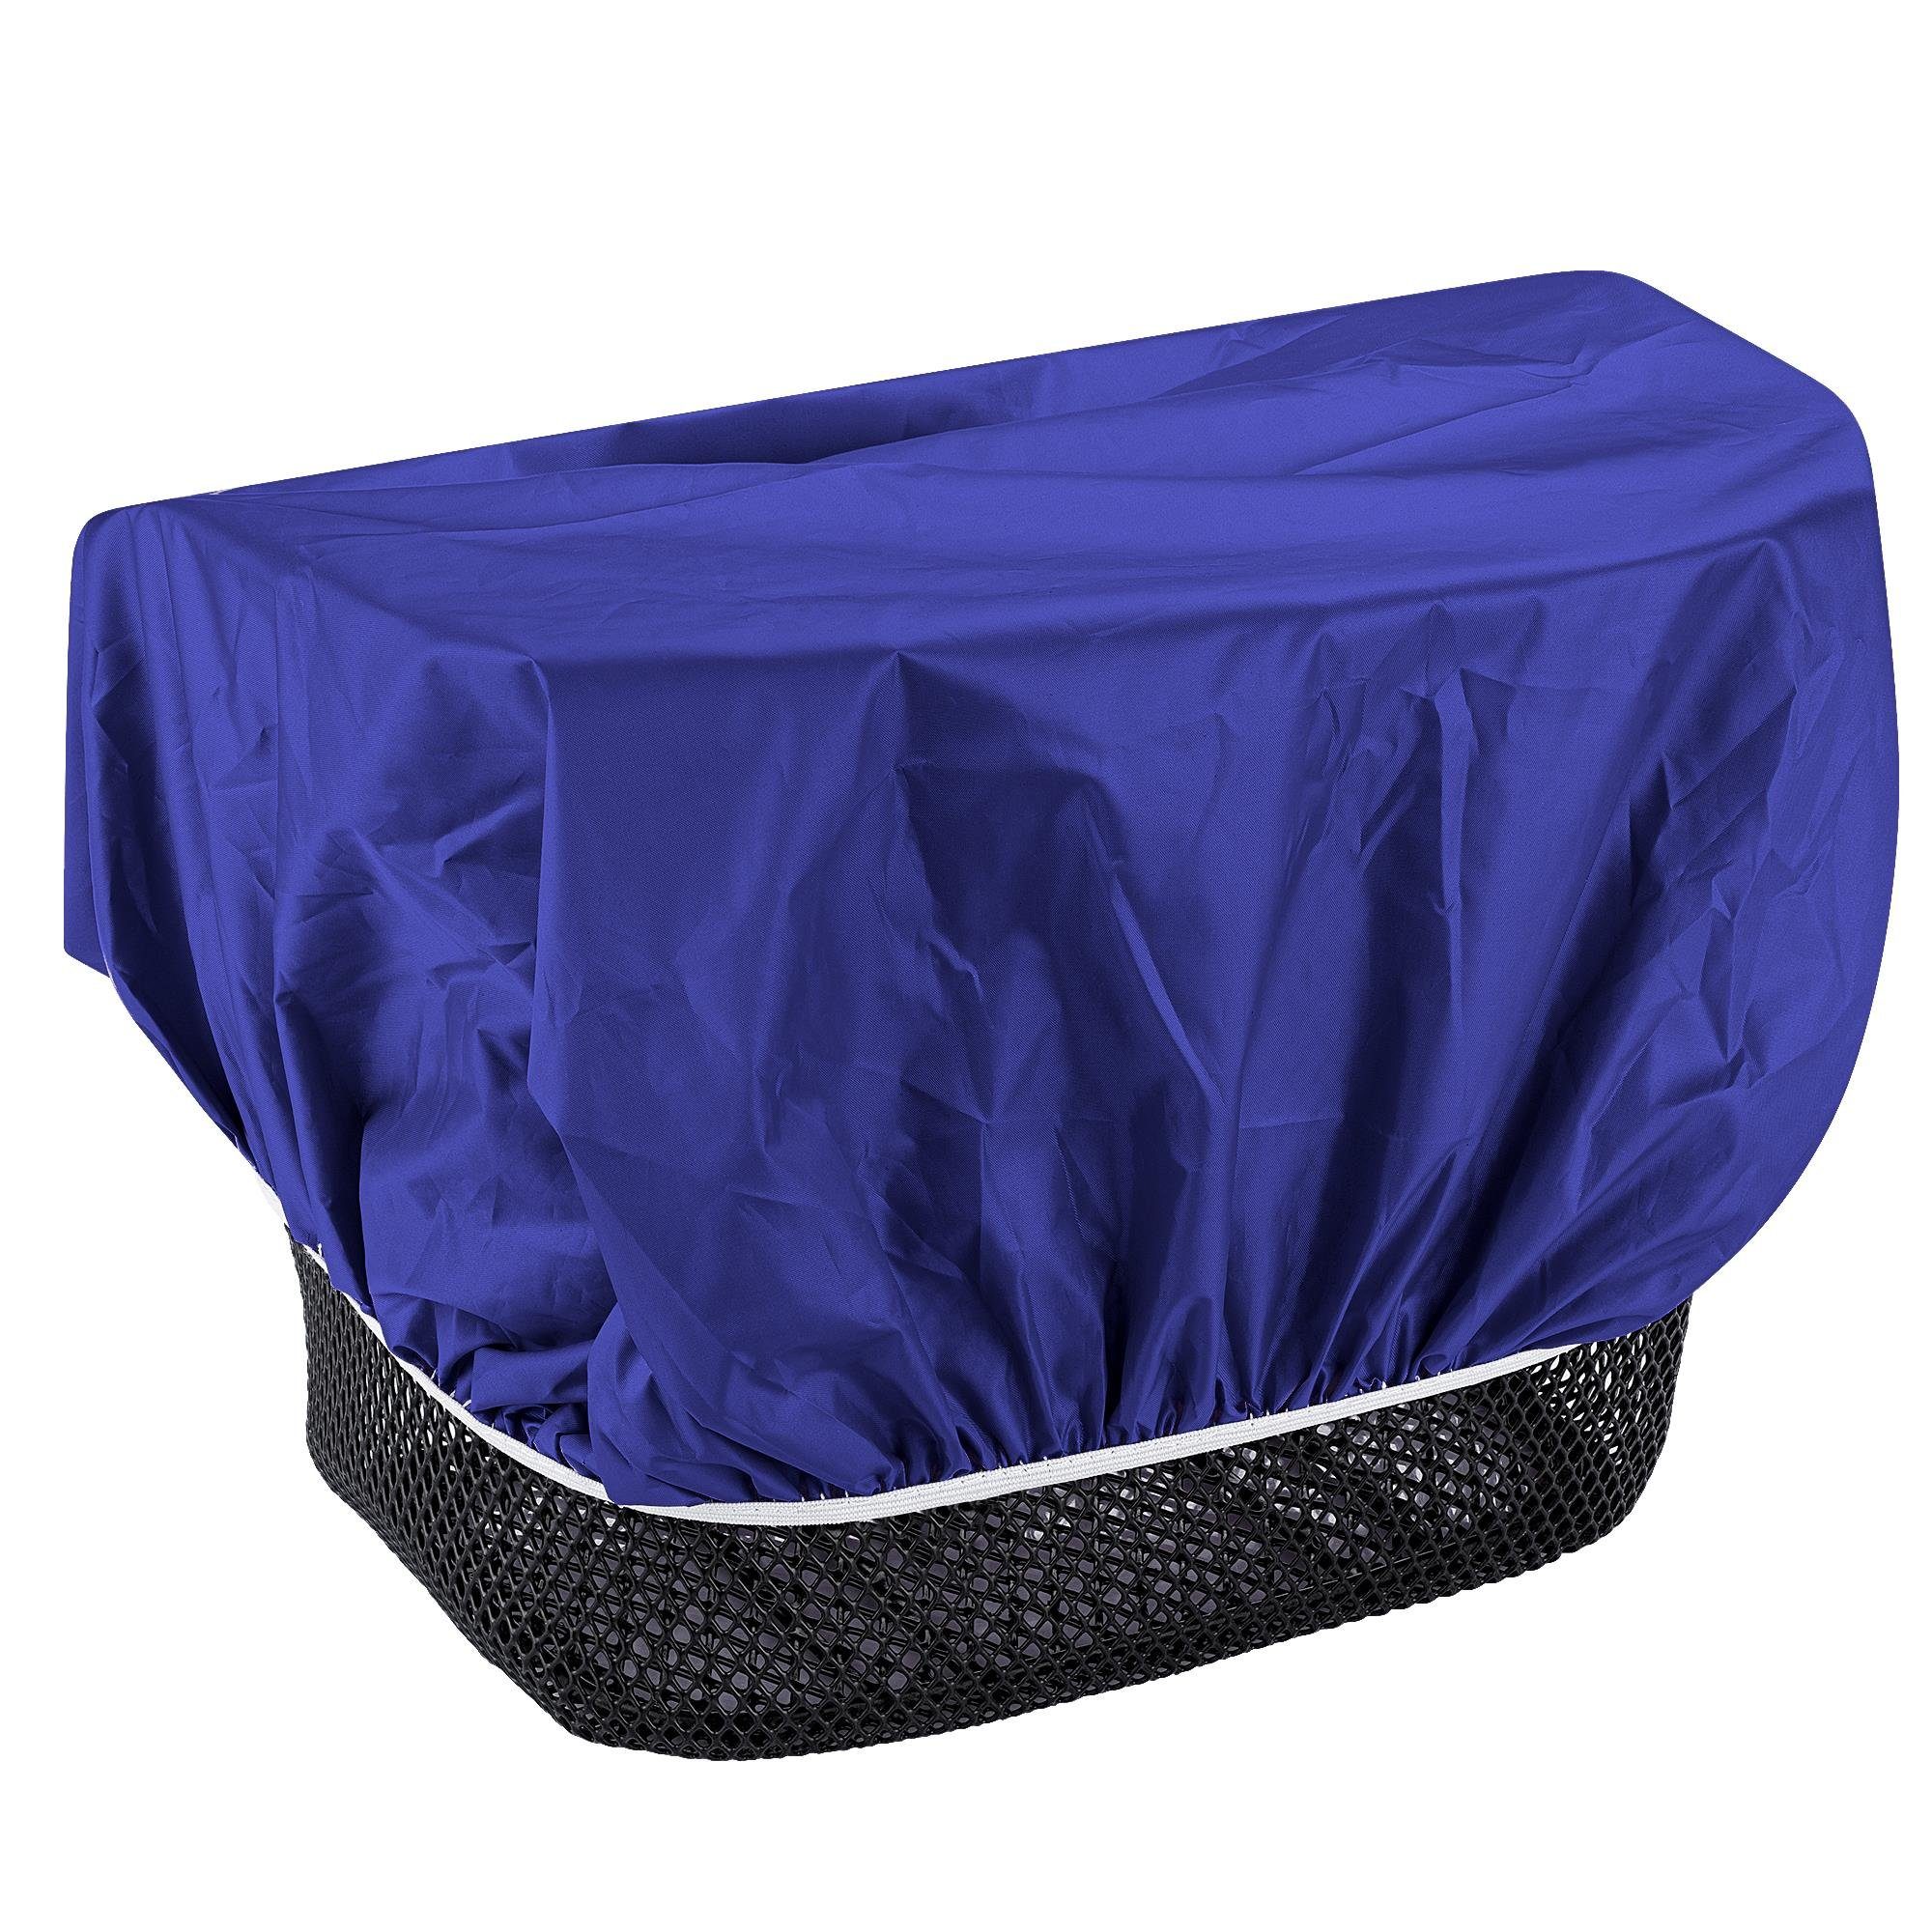 EAZY CASE Fahrradkorb Universal Korb, Regenschutz Regenhülle Korbüberzug für Fahrradkorb Blau für wasserabweisend Körbe